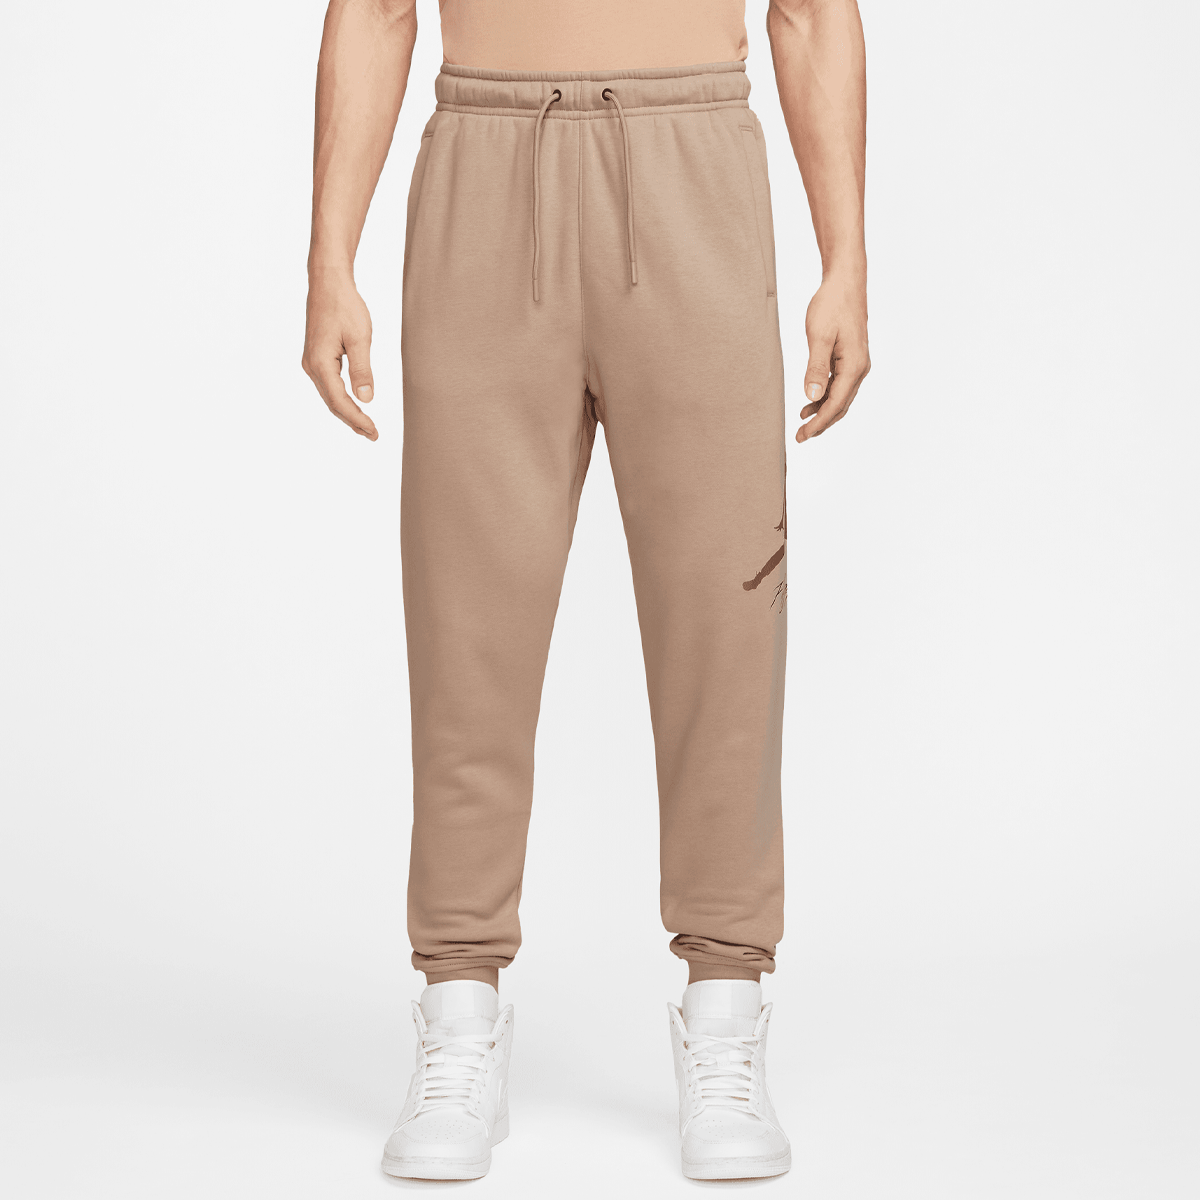 Jordan Essentials Fleece Baseline Pants Trainingsbroeken Heren hemp lt british tan maat: S beschikbare maaten:S XL